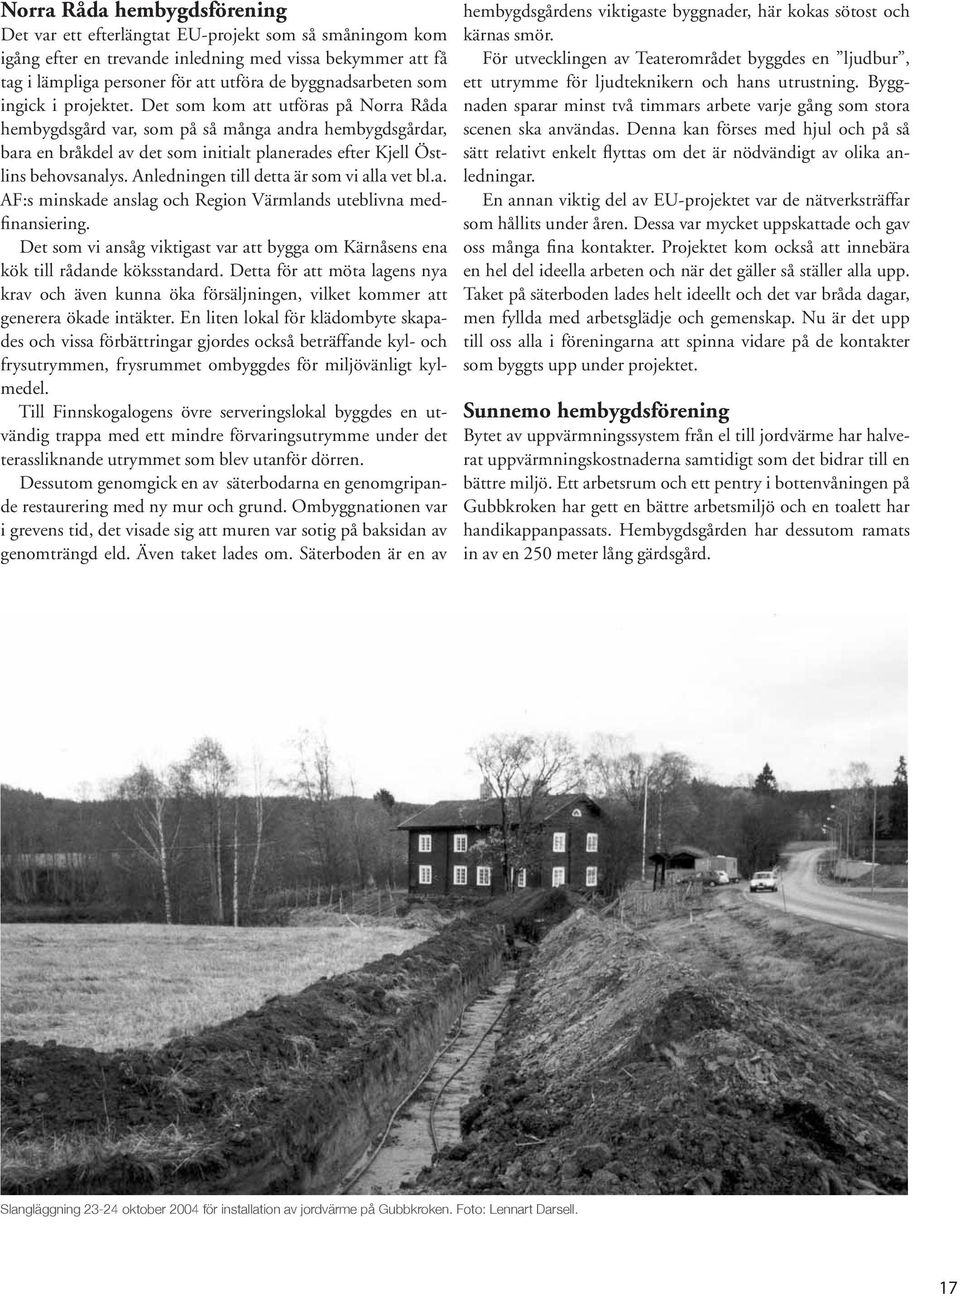 Det som kom att utföras på Norra Råda hembygdsgård var, som på så många andra hembygdsgårdar, bara en bråkdel av det som initialt planerades efter Kjell Östlins behovsanalys.